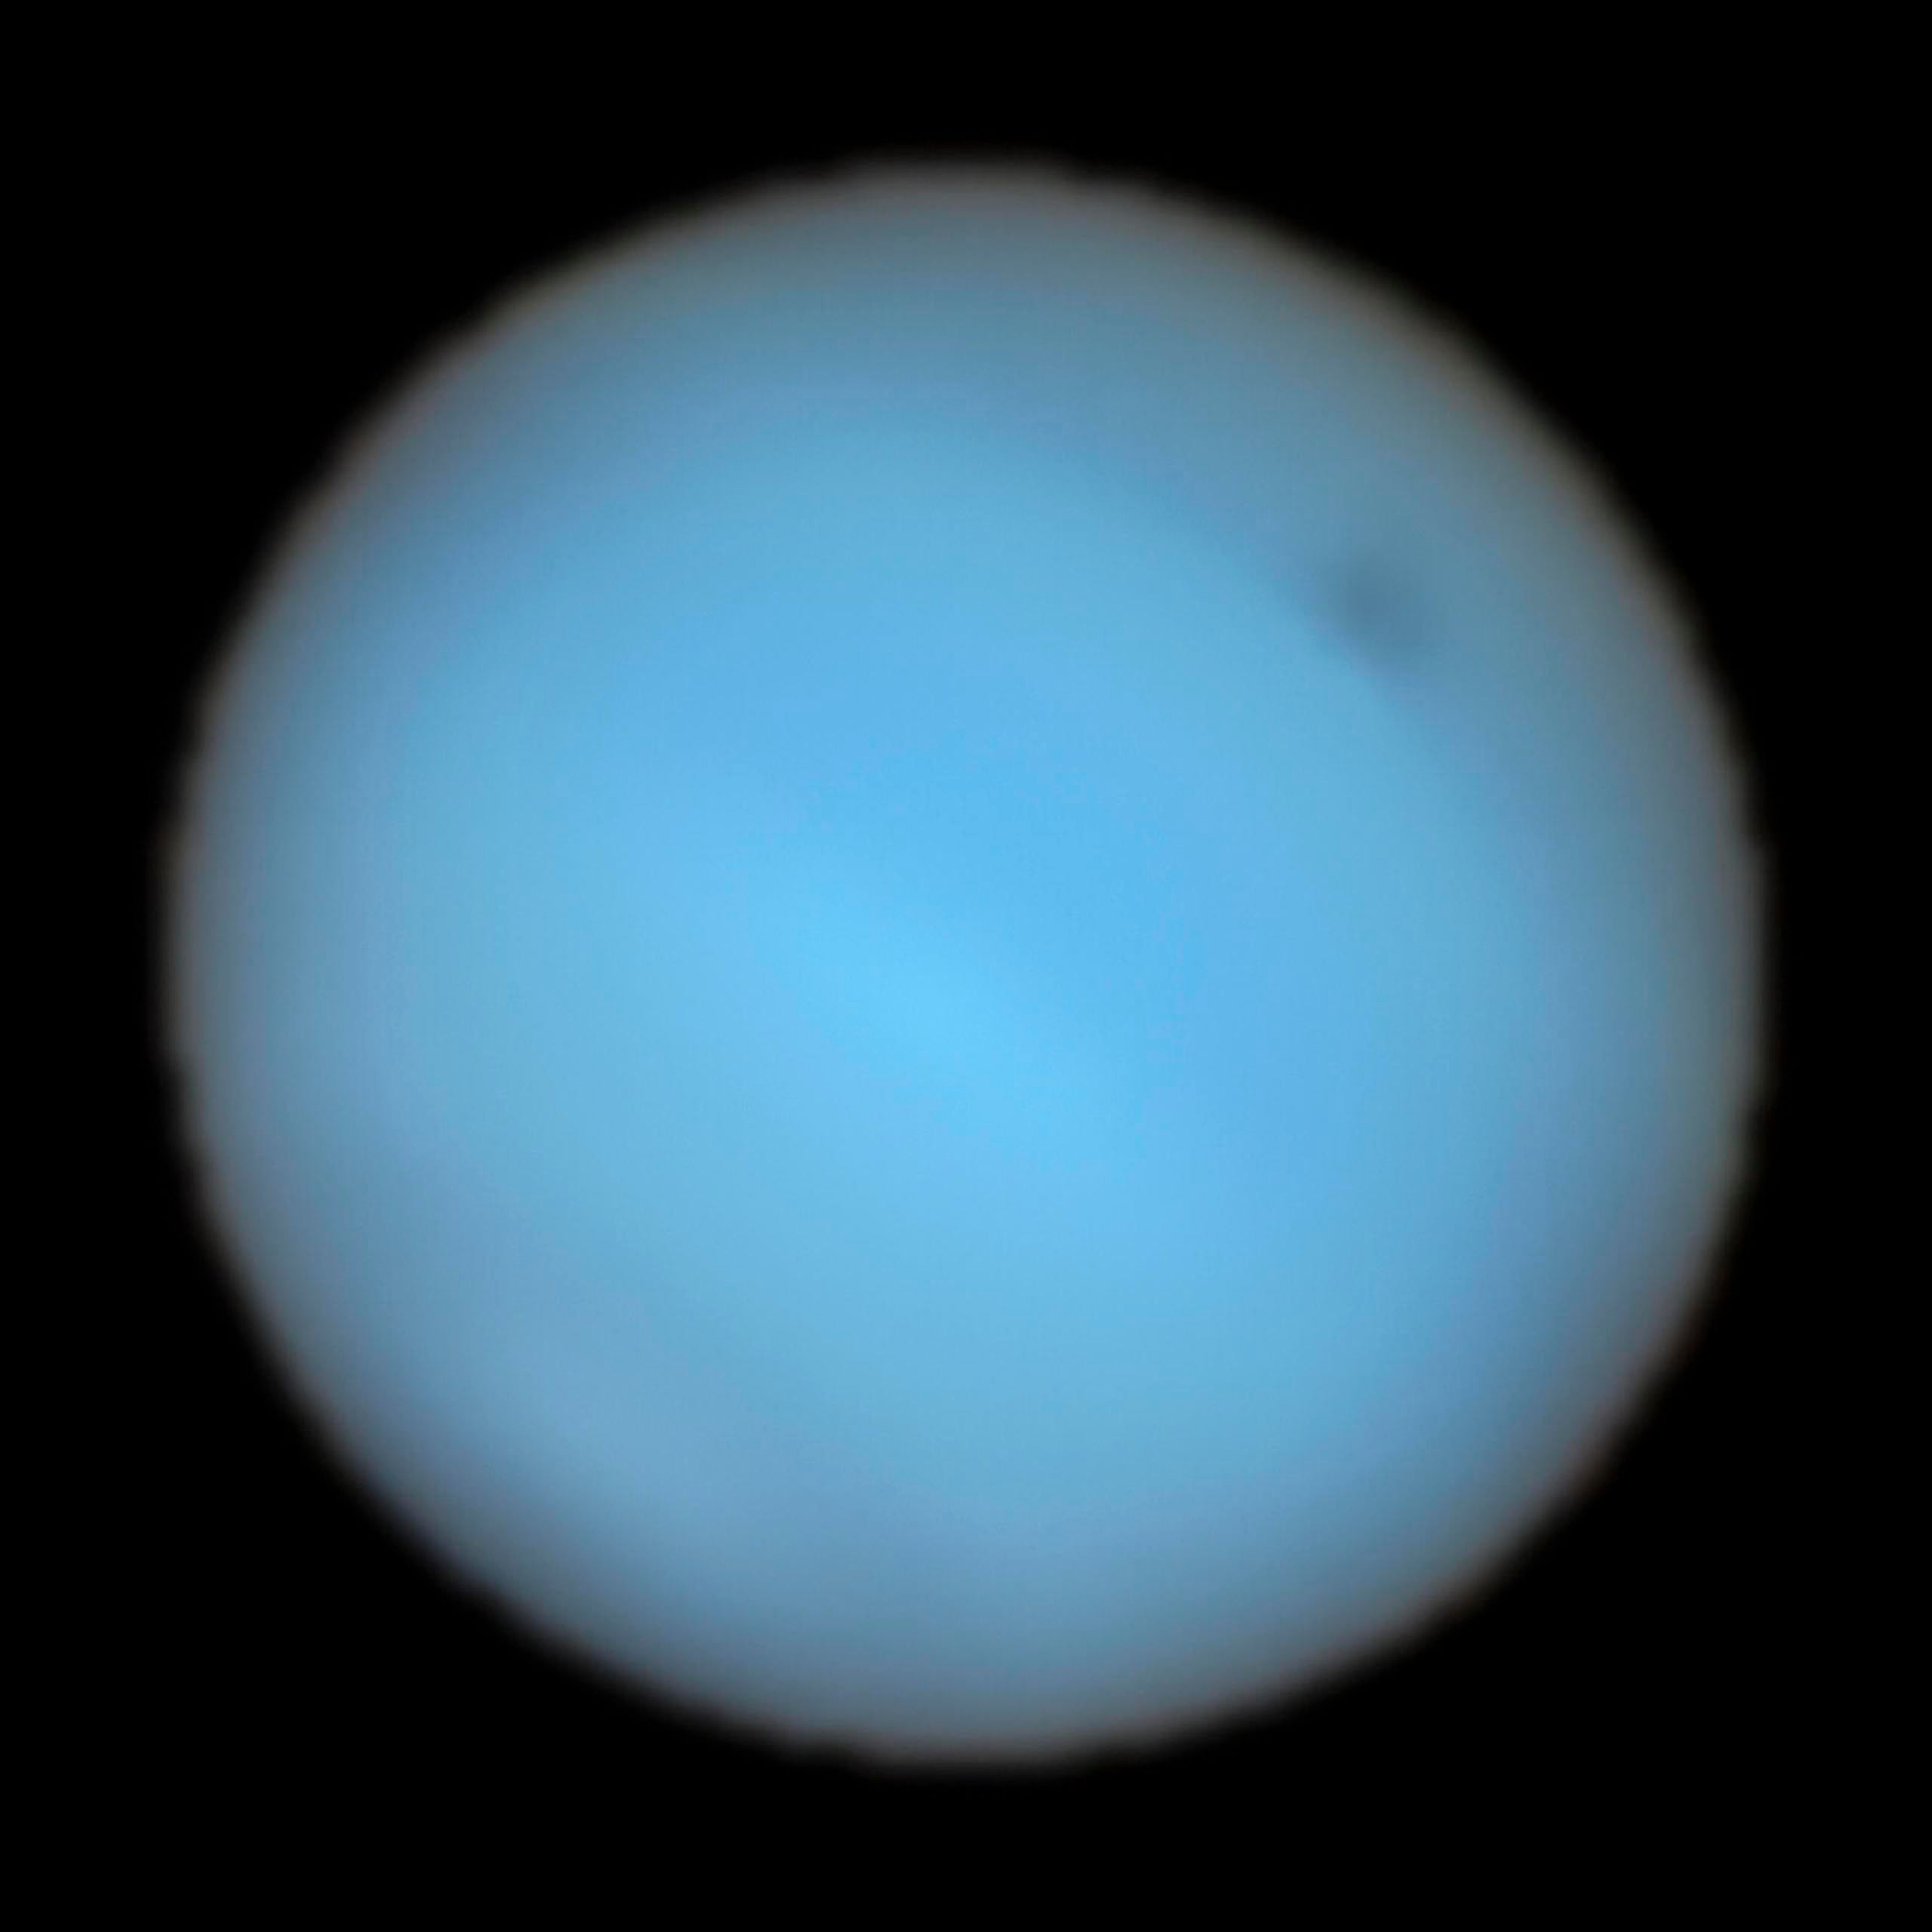 Observan por primera vez desde la Tierra una mancha oscura en Neptuno ...